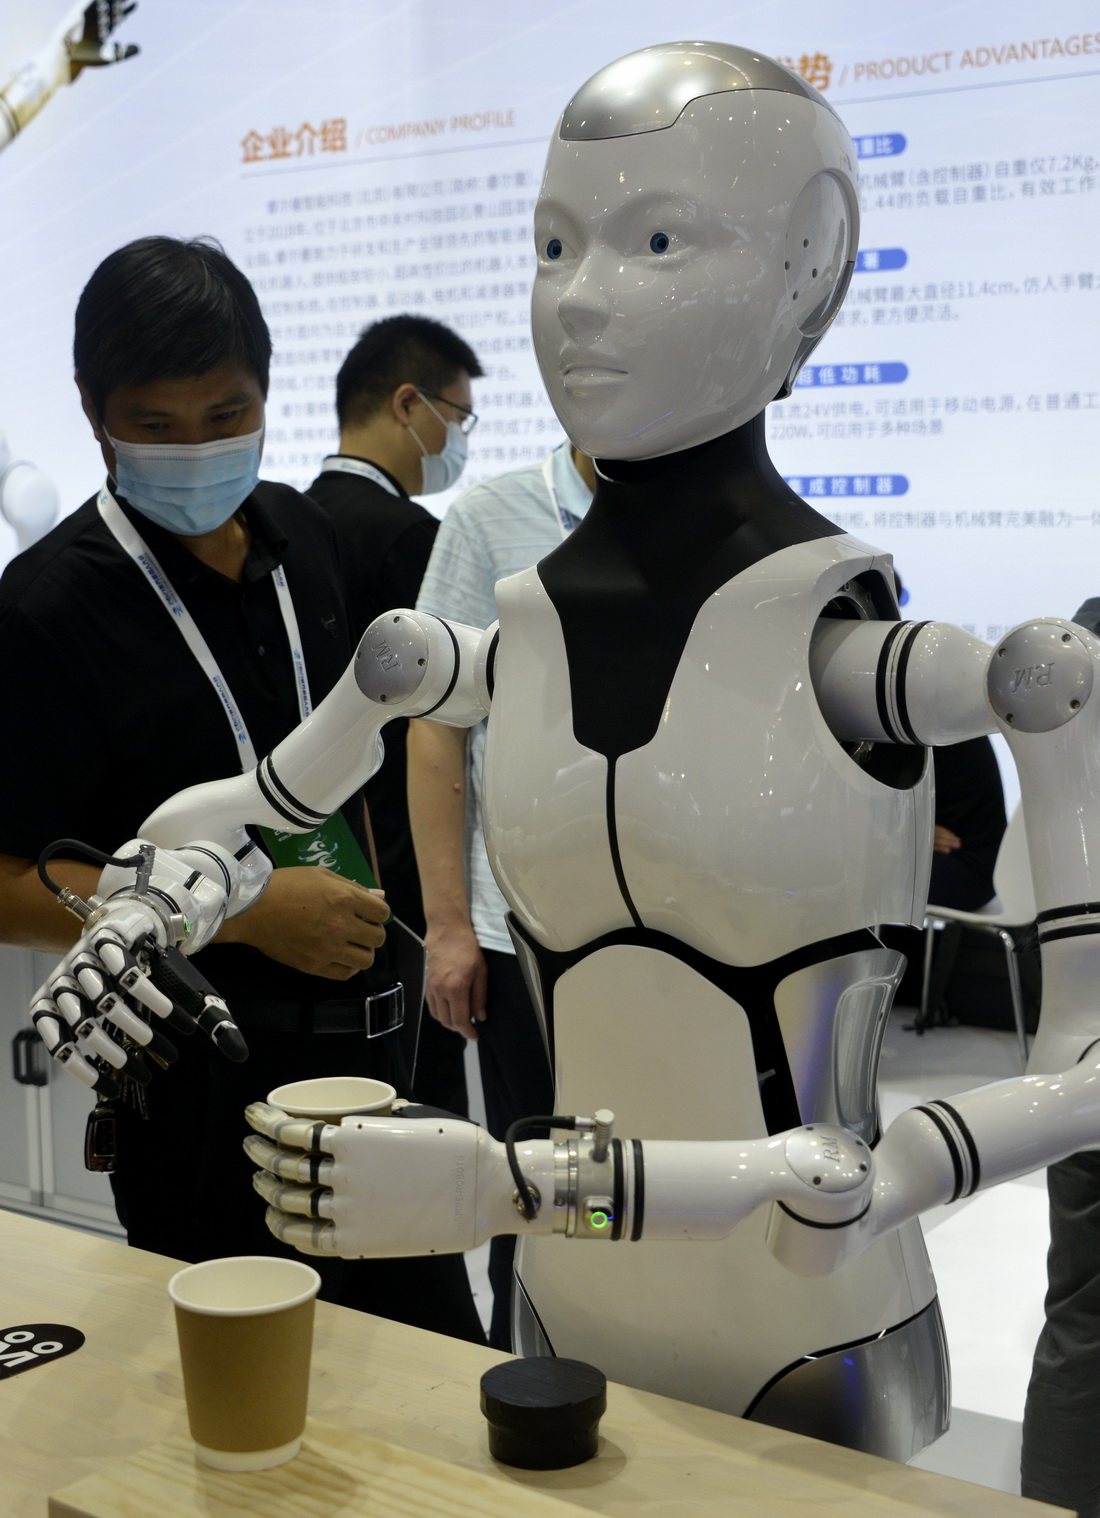 機器人大會上展示的一款智能生活應用機器人（9月12日攝）。